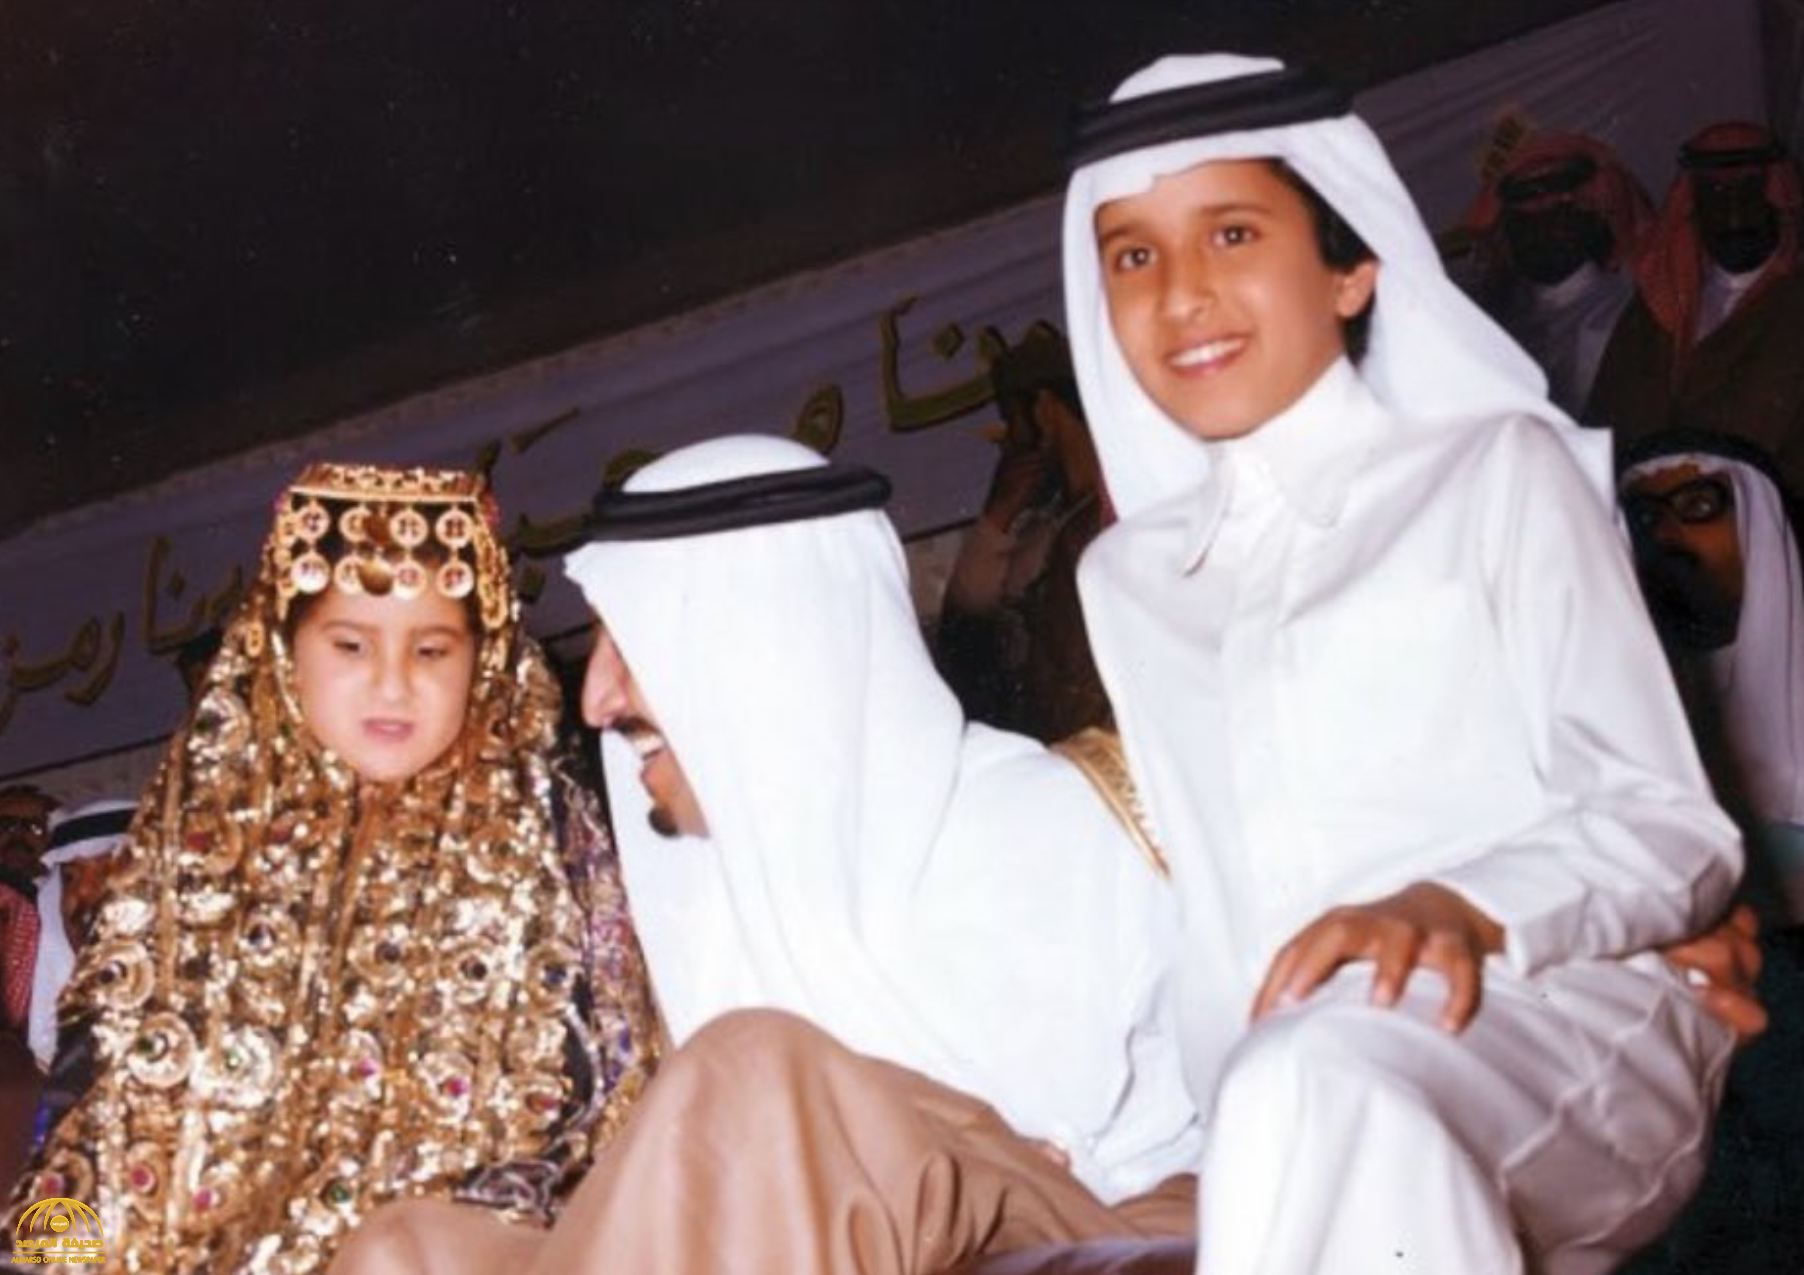 حساب "تاريخ آل سعود" يكشف  اسم الطفل والطفلة الذين  يتوسطهما "الملك سلمان" في صورة نادرة